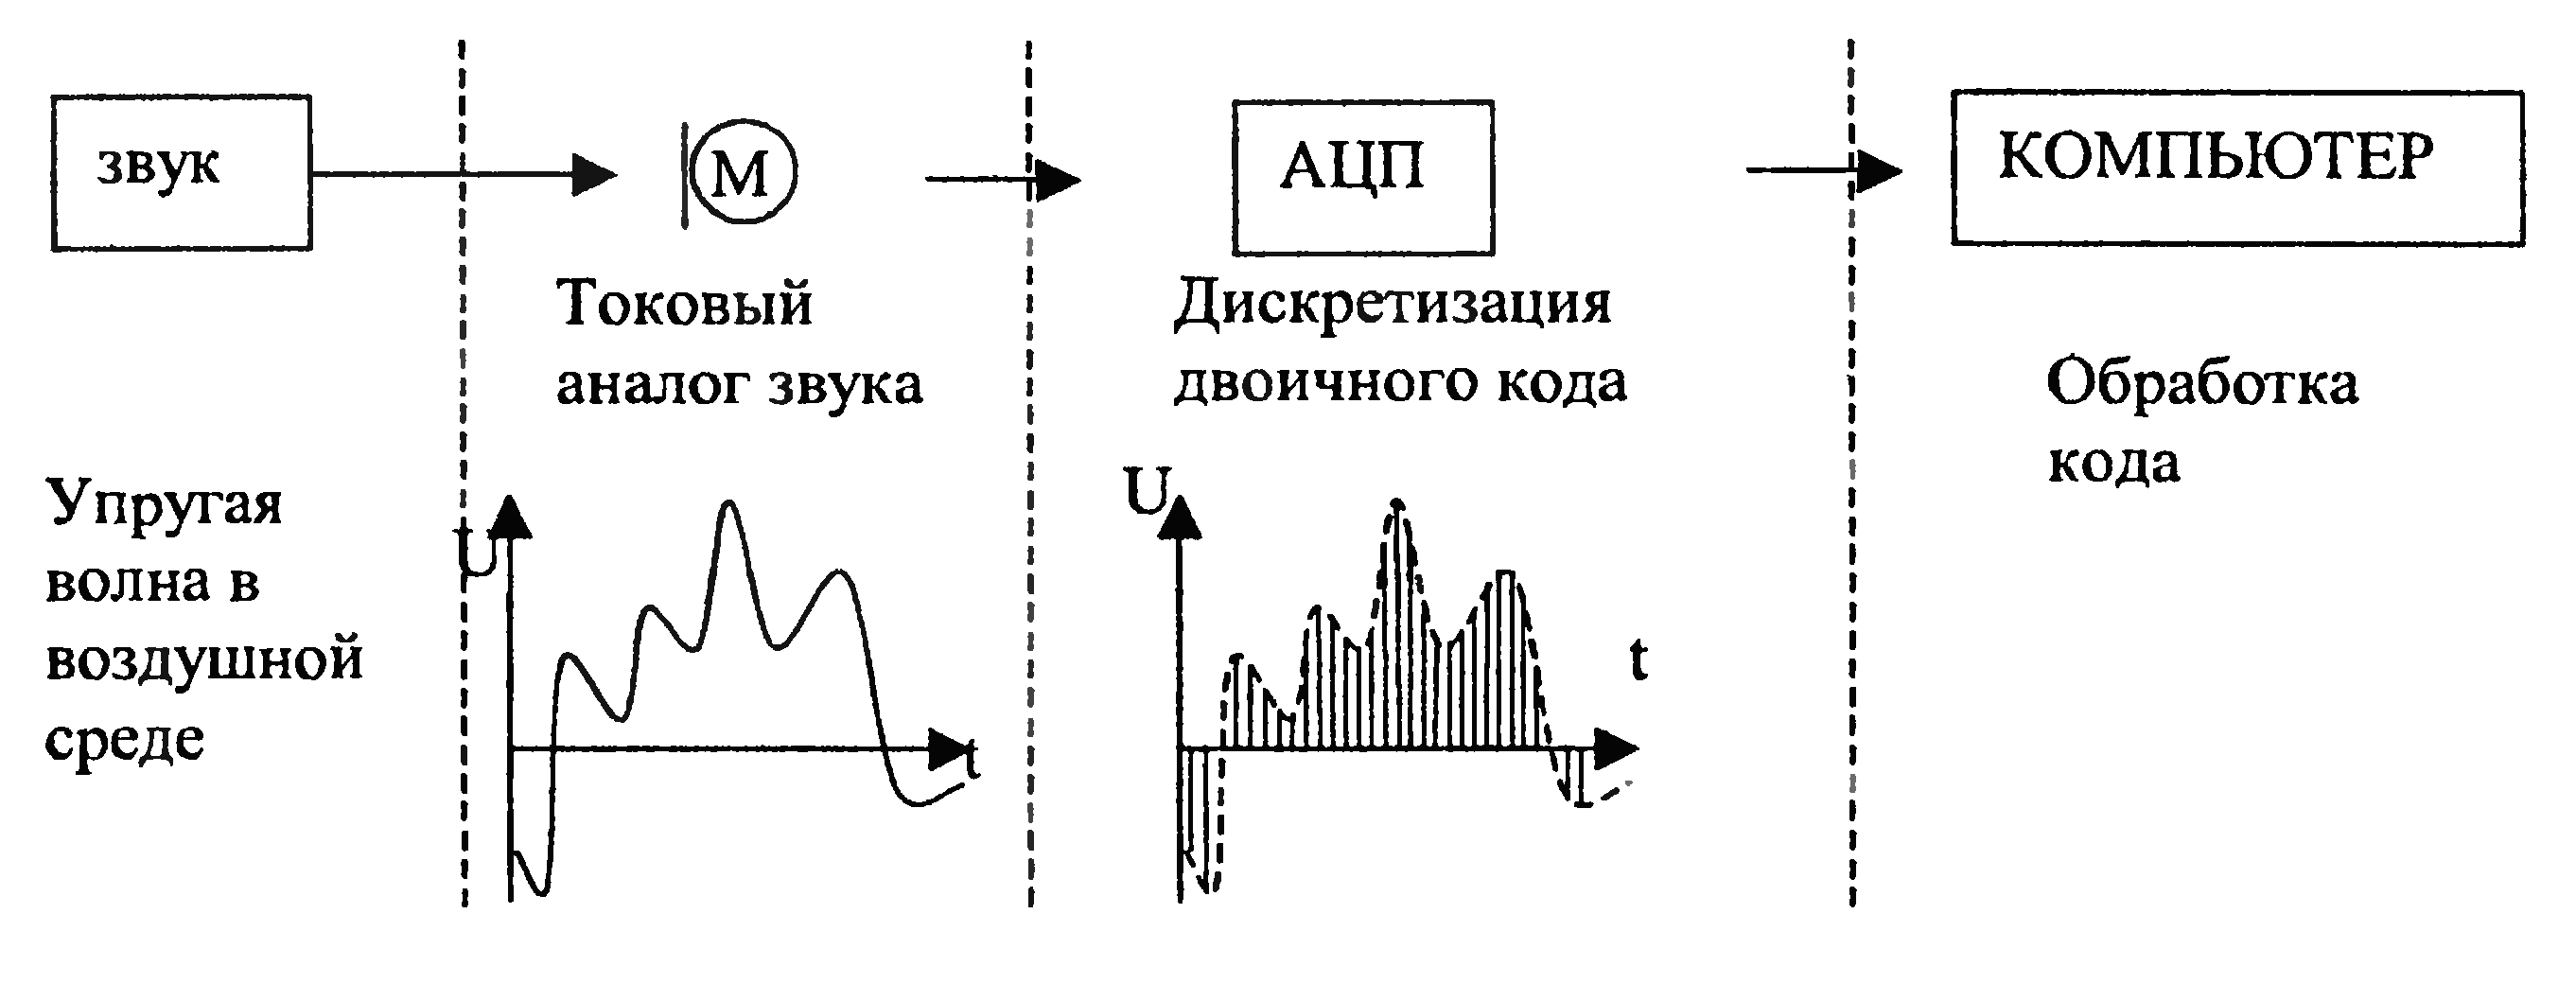 Аналоговый сигнал звука. Схема частотной обработки аналоговых сигналов. Кодирование аналогового звукового сигнала. Обработка звука схемы. Представление аналогового сигнала и дискретного схема.